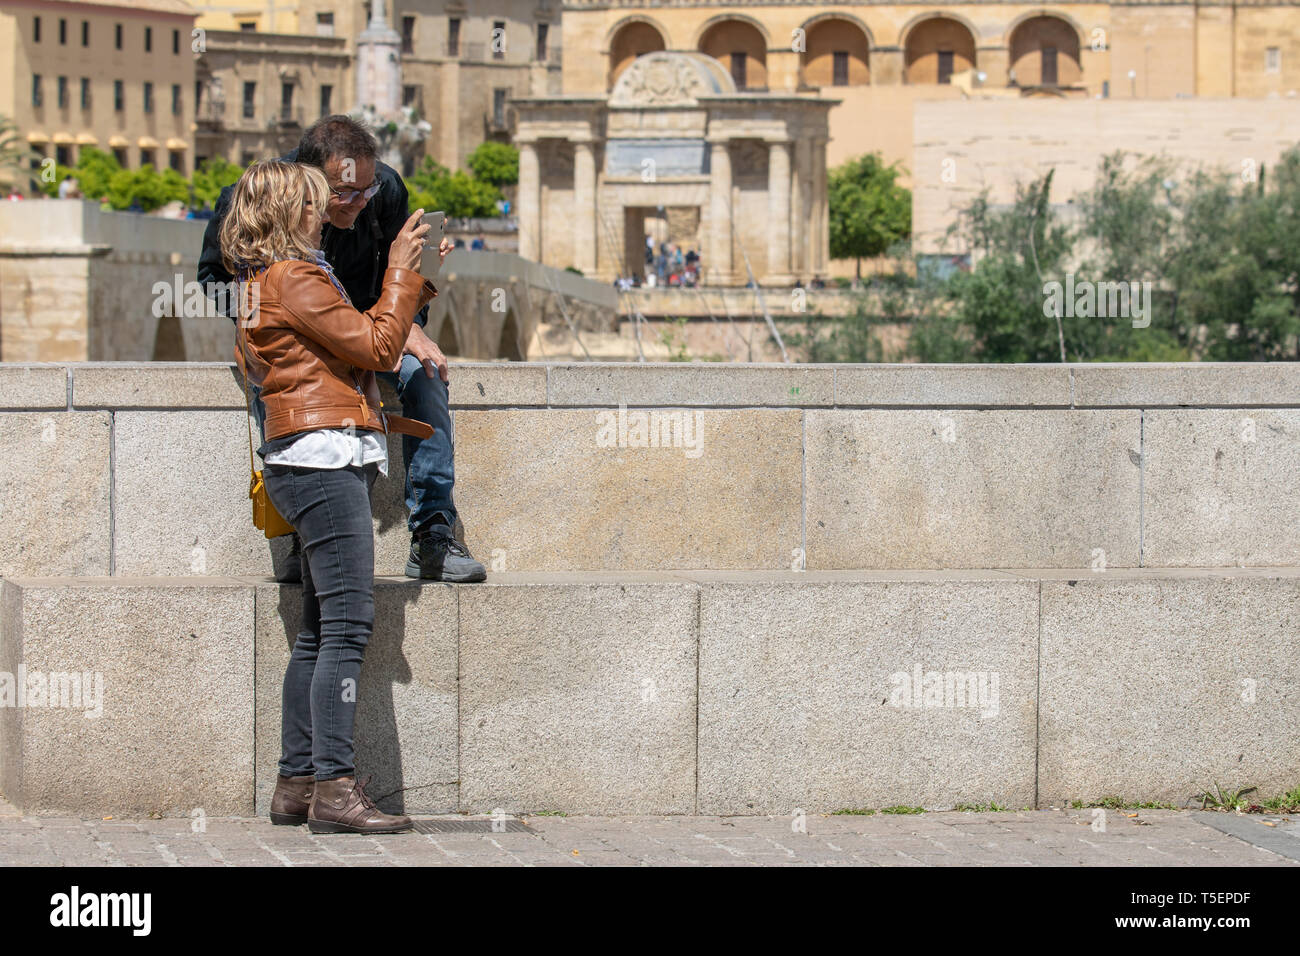 Cordoba, Spain - April 23, 2019: Tourist couple in Cordoba looking photos on their smart phone Stock Photo